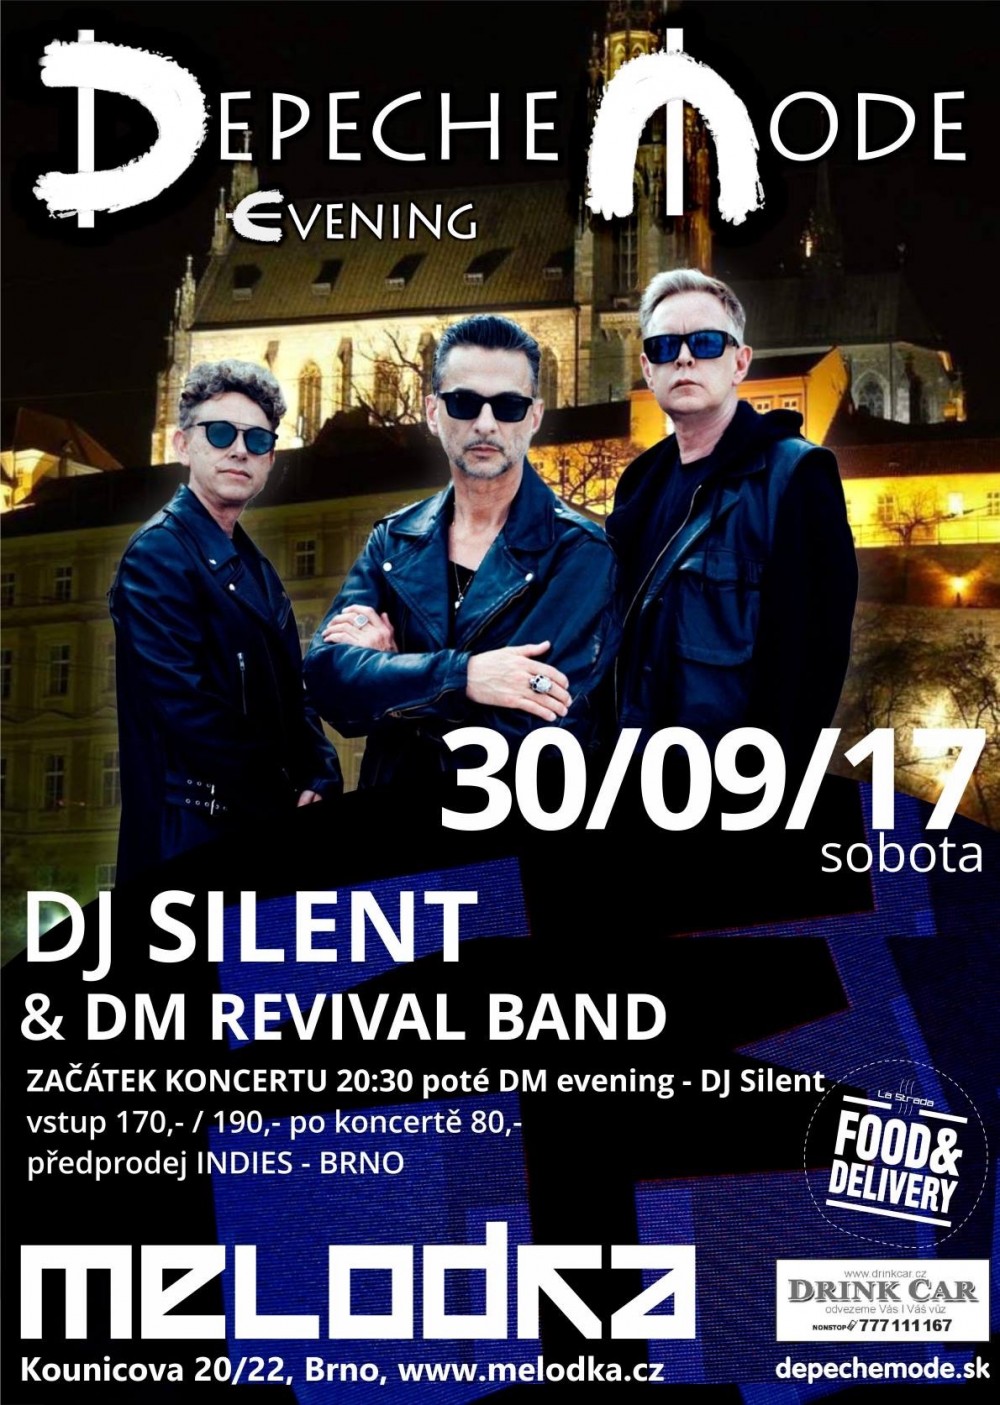 Plagát: Depeche Mode evening